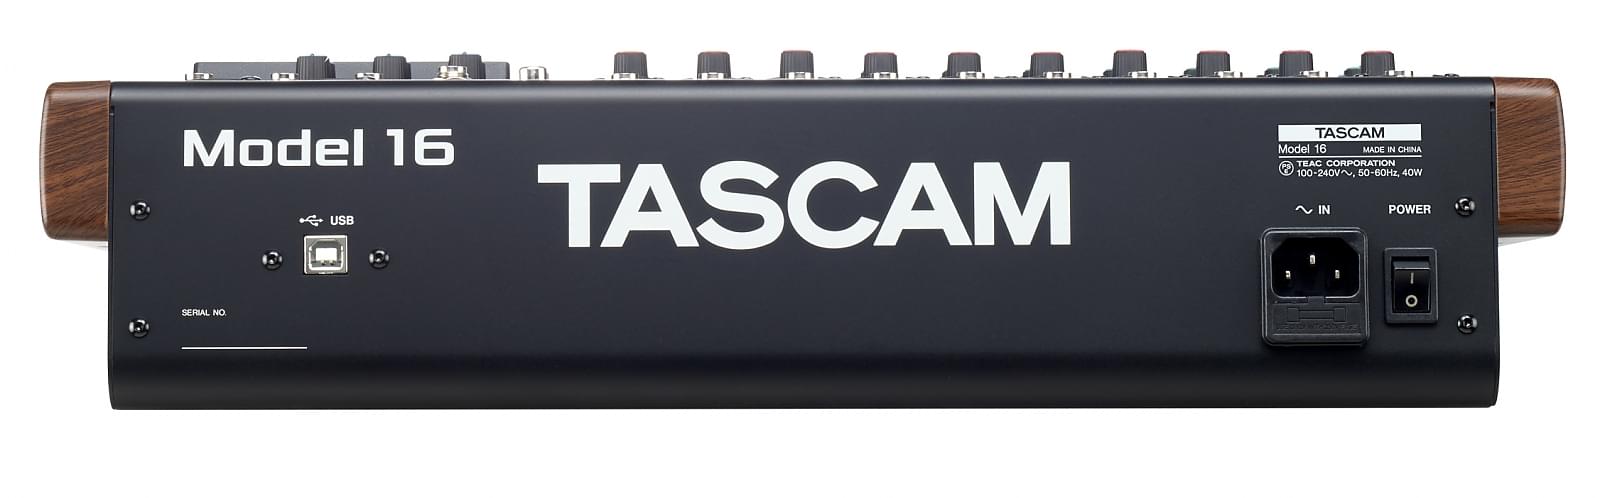 Vue arrière | Tascam Model 16